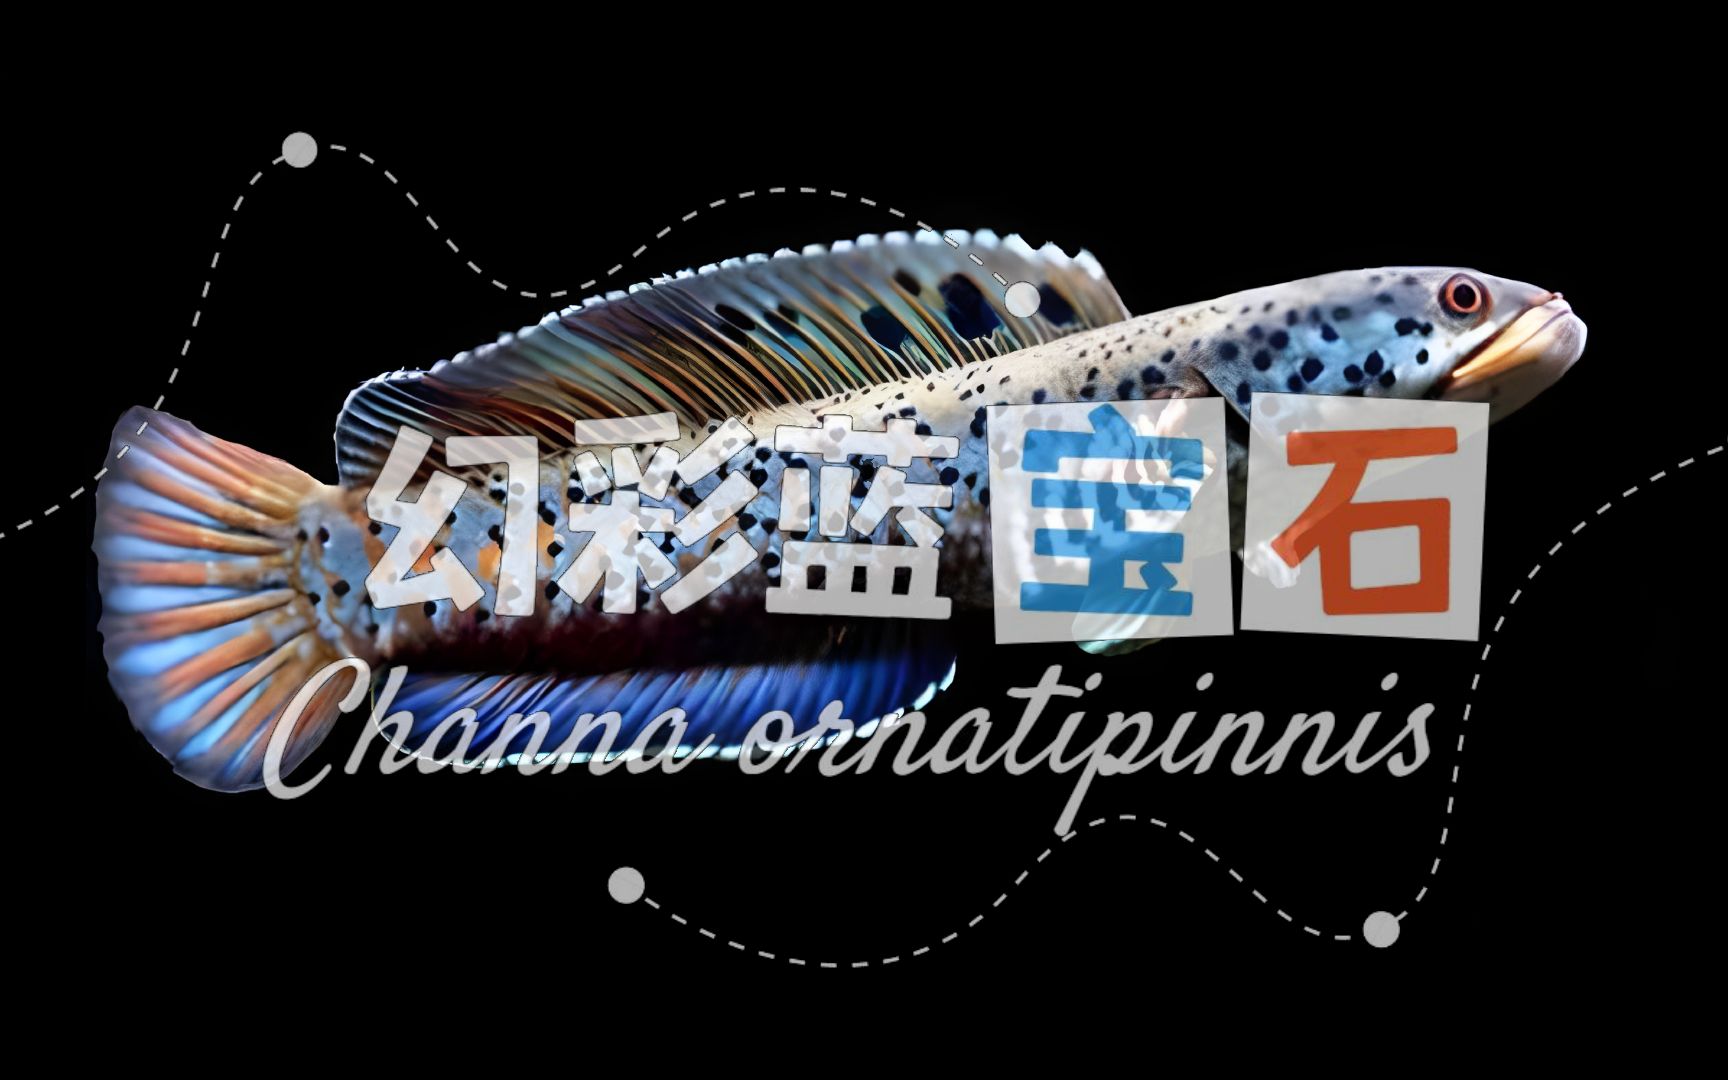 最全的雷龙品种介绍，幻彩蓝宝石雷龙Channa ornatipinnis